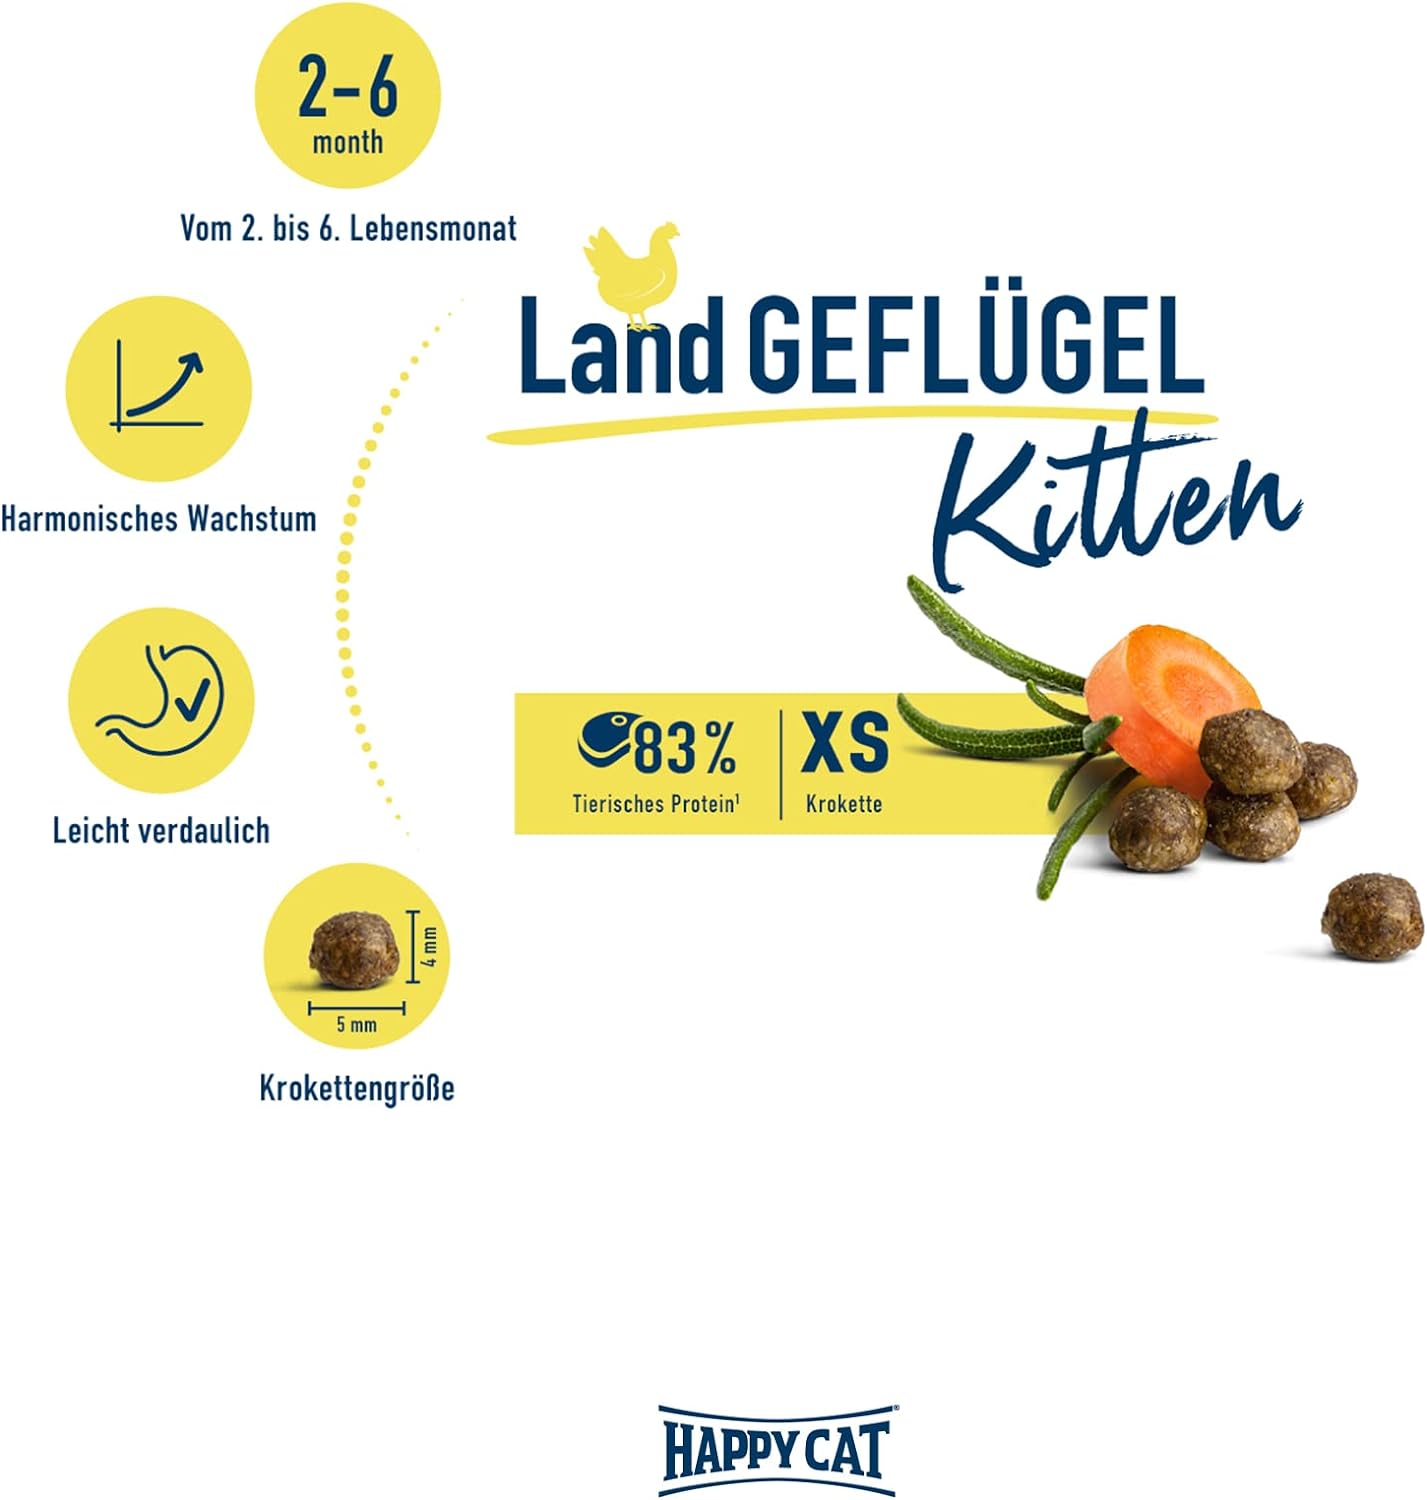 Happy Cat Kitten Land Geflugel (Poultry) - 1.3 KG